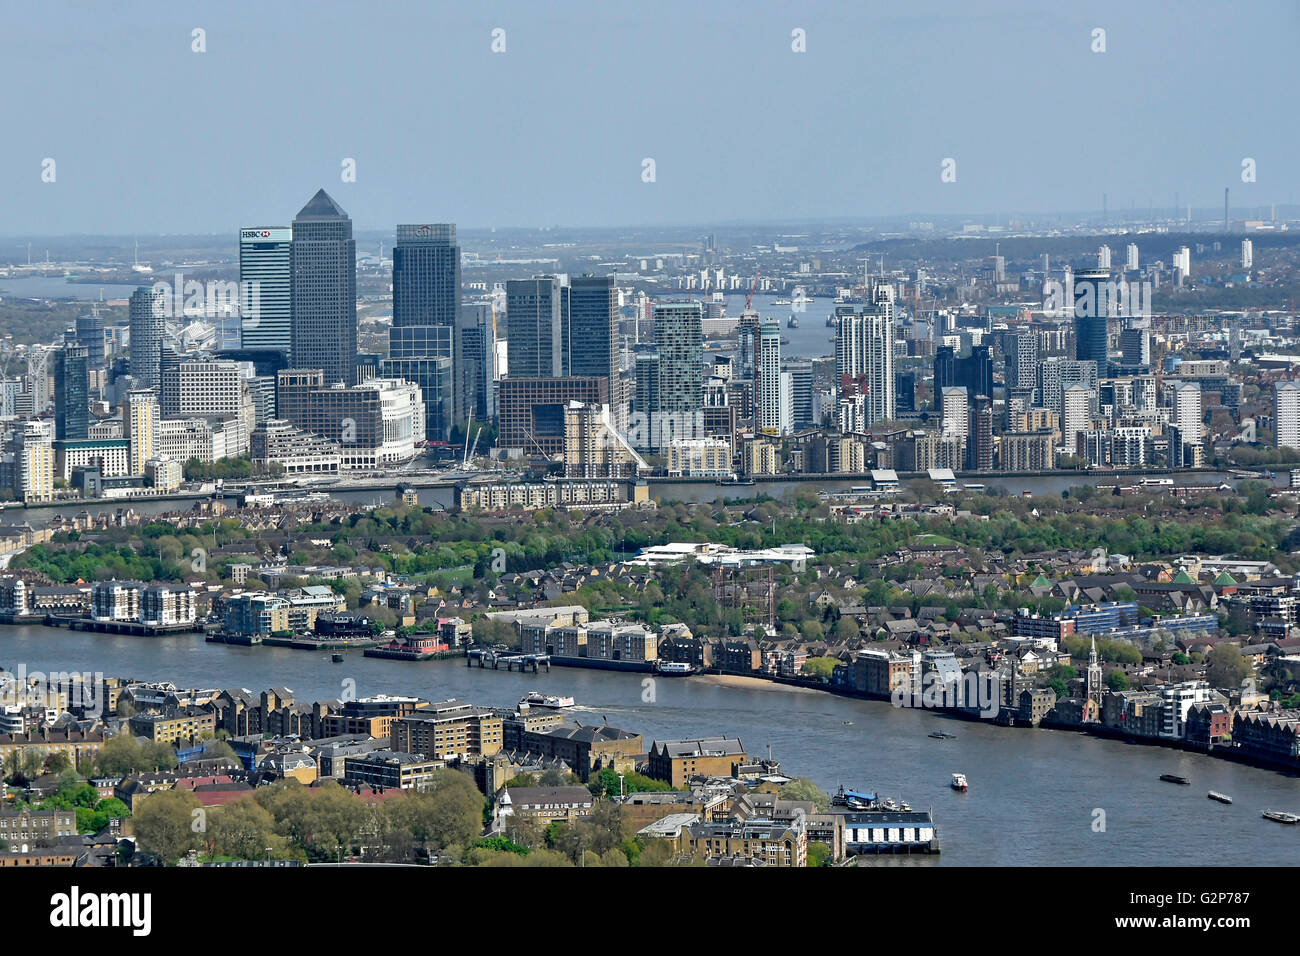 Vue aérienne de haut en bas à la Tamise et toits de Londres cityscape at Canary Wharf à l'Isle of Dogs London Docklands England UK Banque D'Images